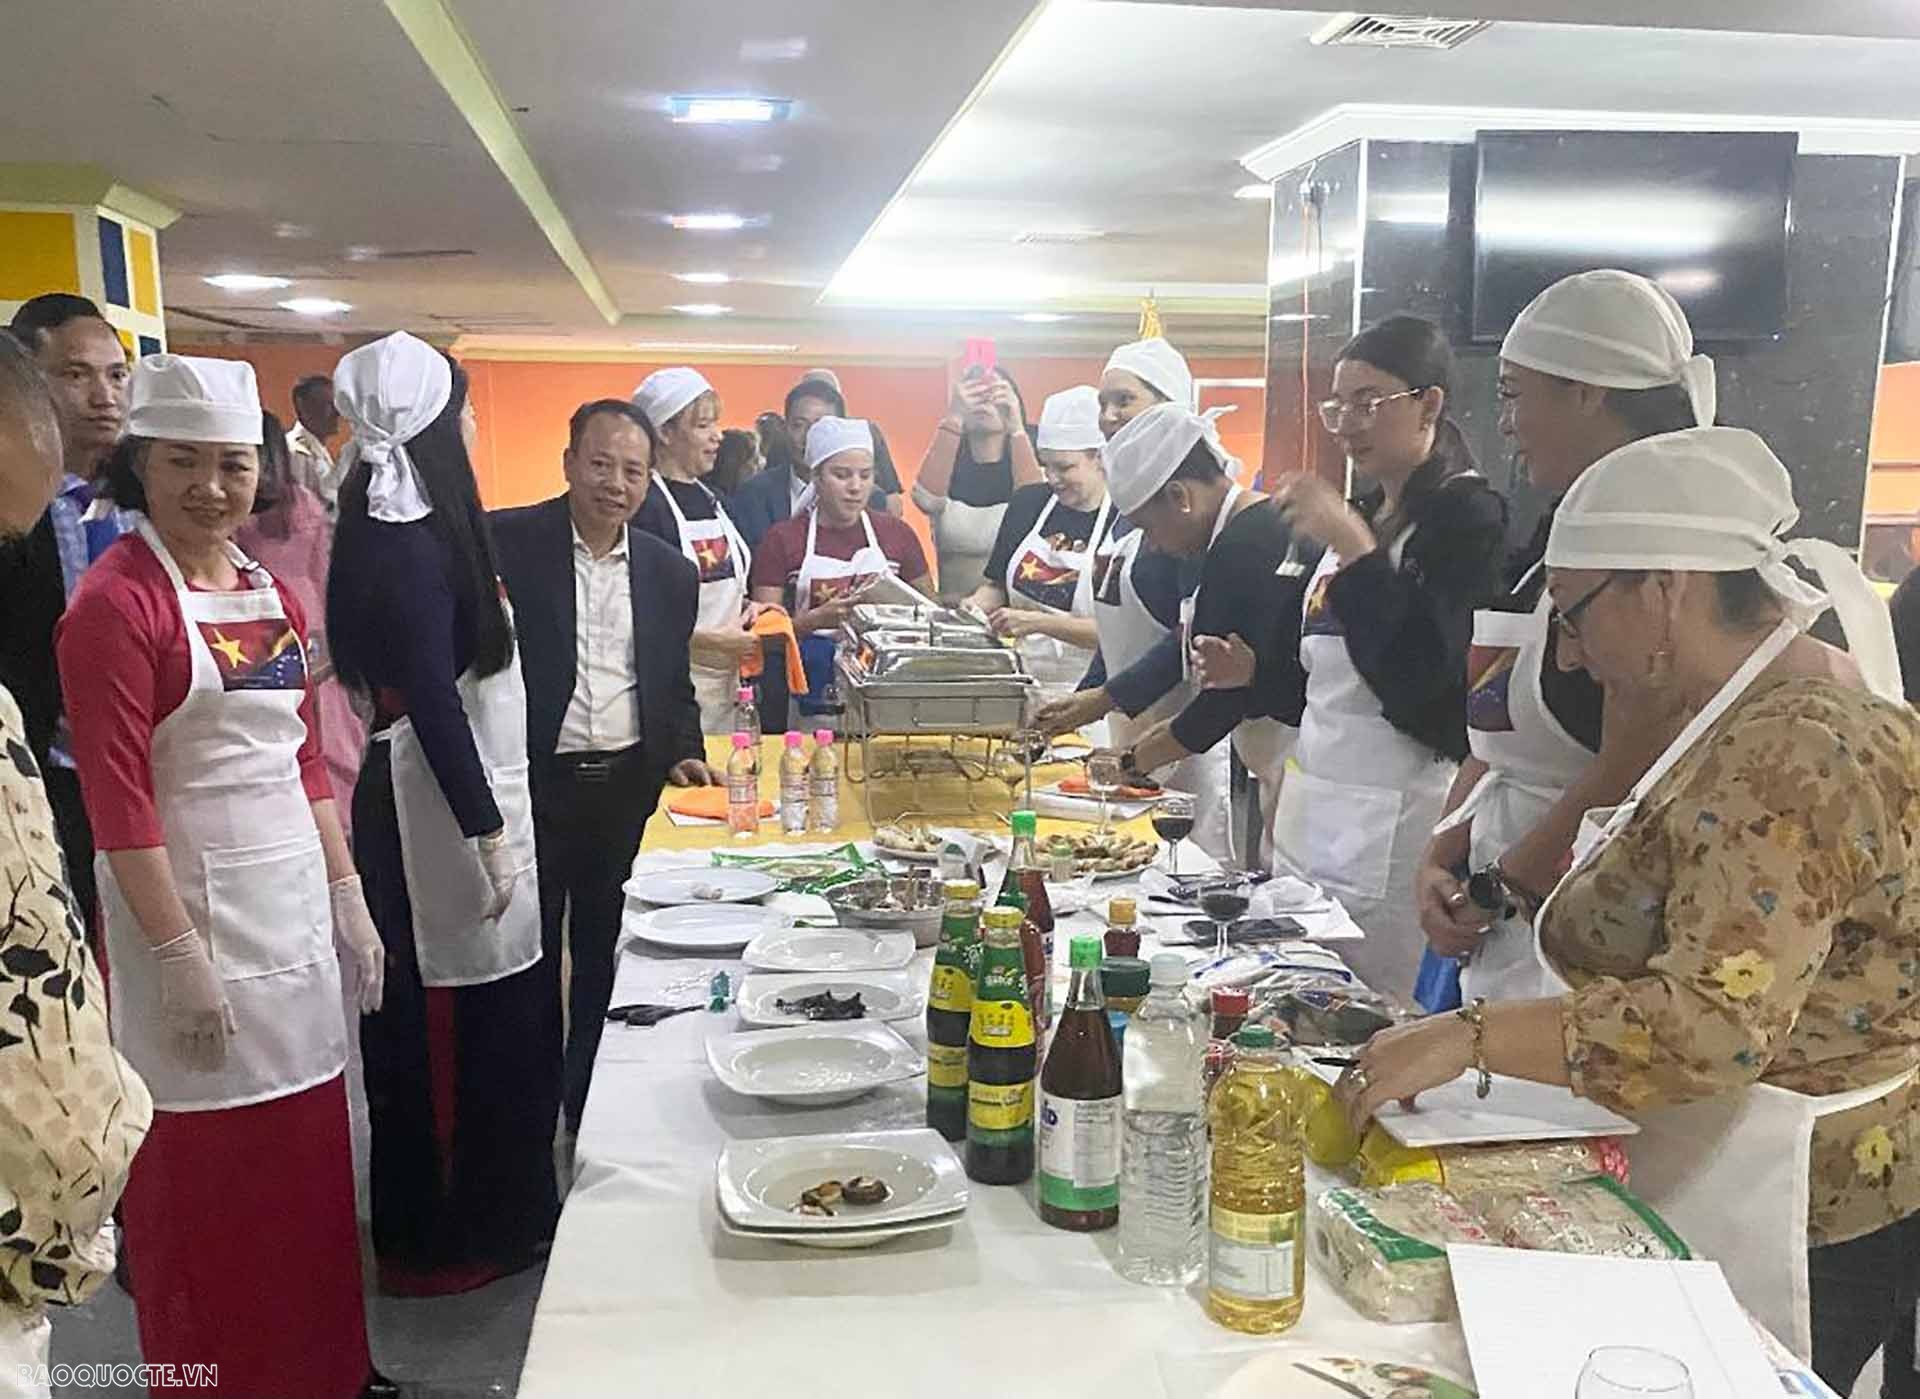 Khai giảng các khóa học tiếng Việt, nấu ăn, múa cổ truyền và Việt Võ đạo tại trường Đại học UNEFA, Venezuela